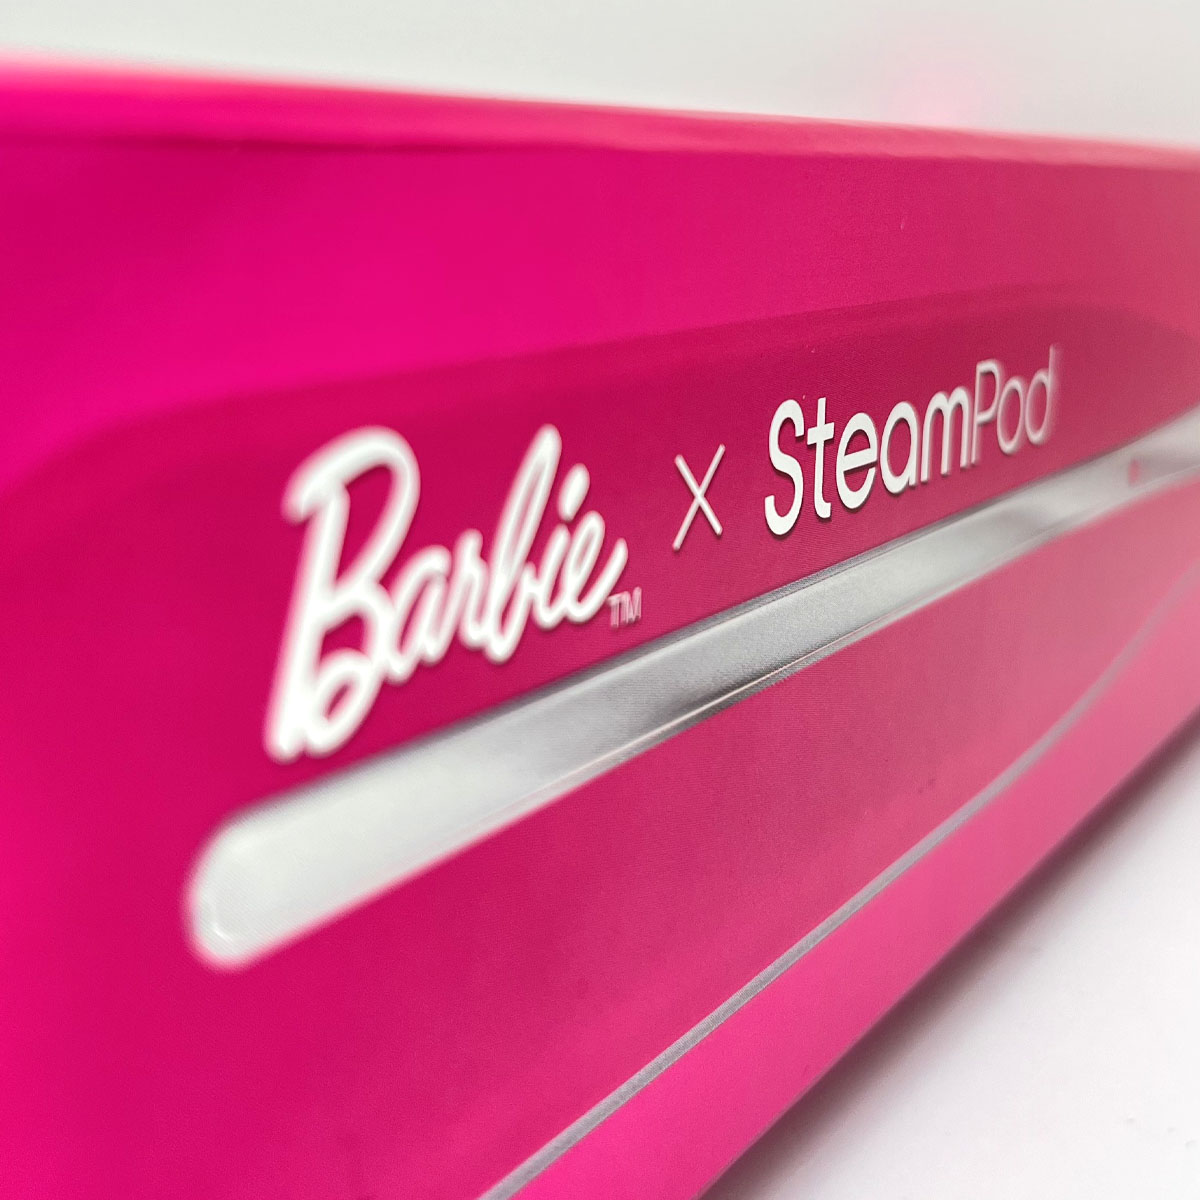 Rápido envío gratuito grandes almacenes envío mundial con pagos seguros  Plancha mágica Color Rosa LEXIBOOK RPB502 Barbie 